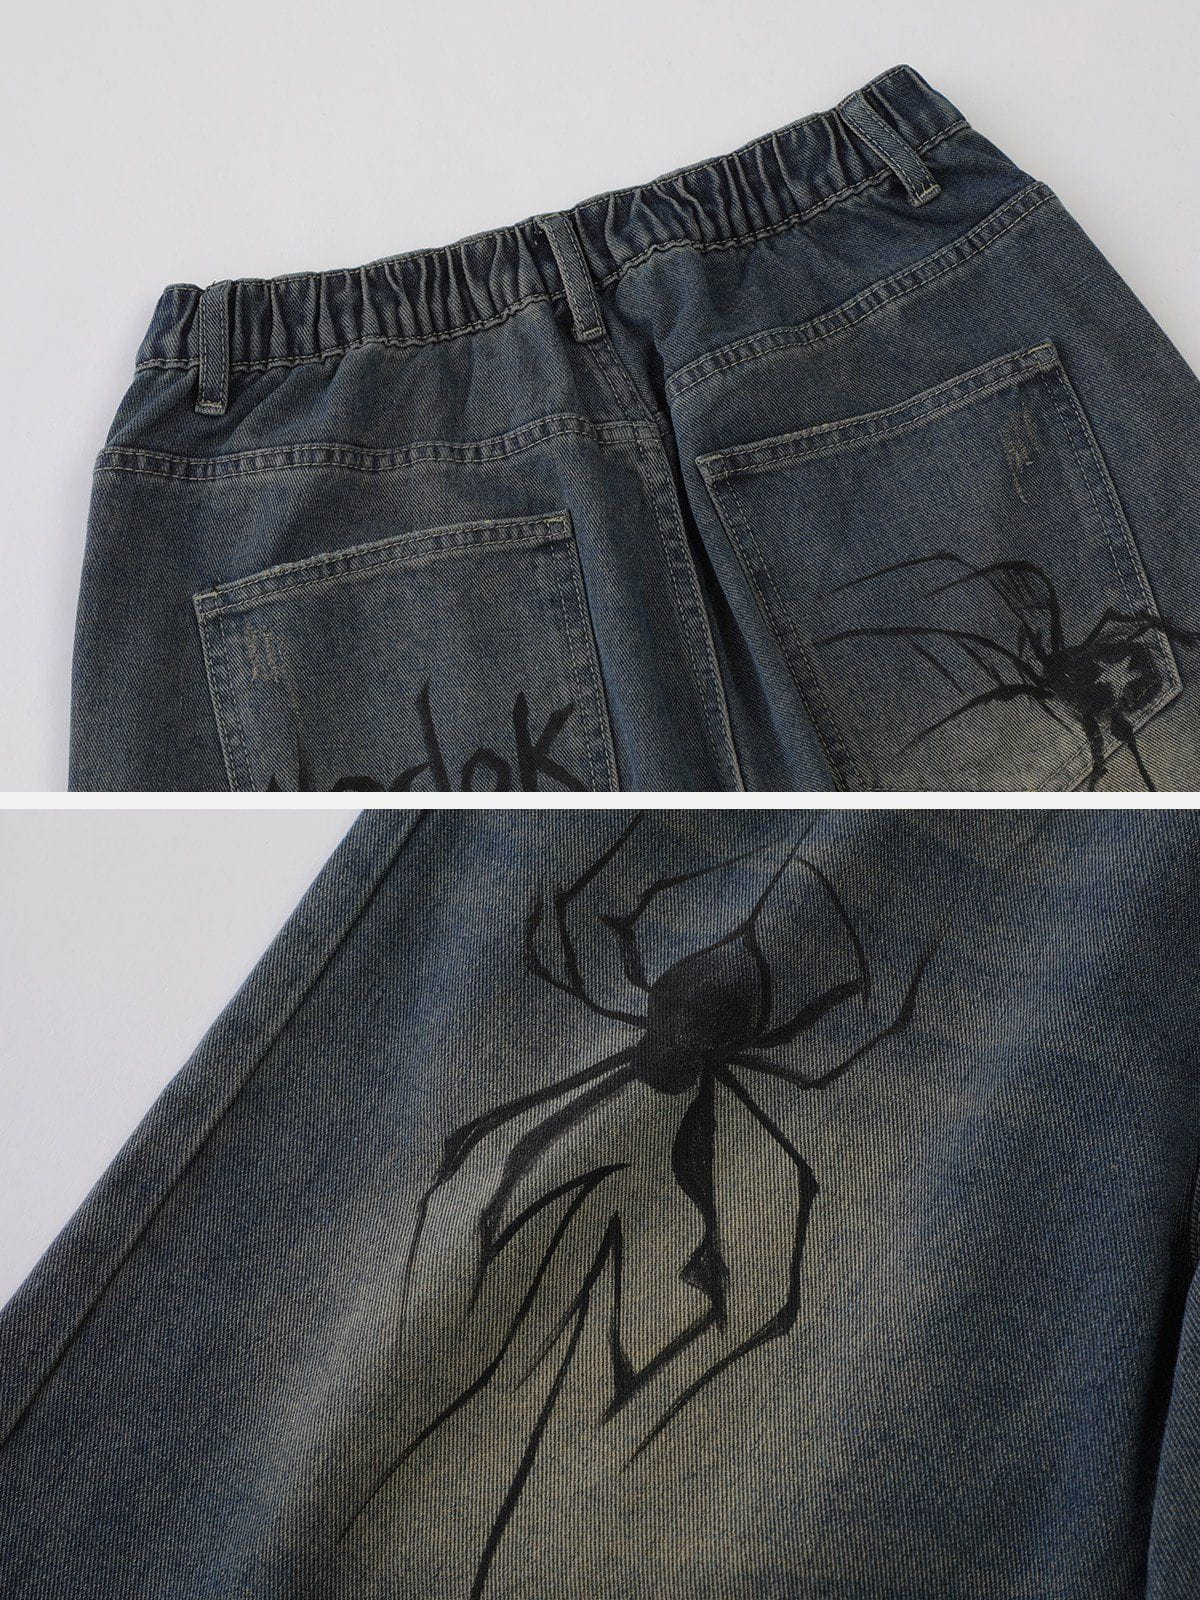 We Love Street Spider Denim Shorts